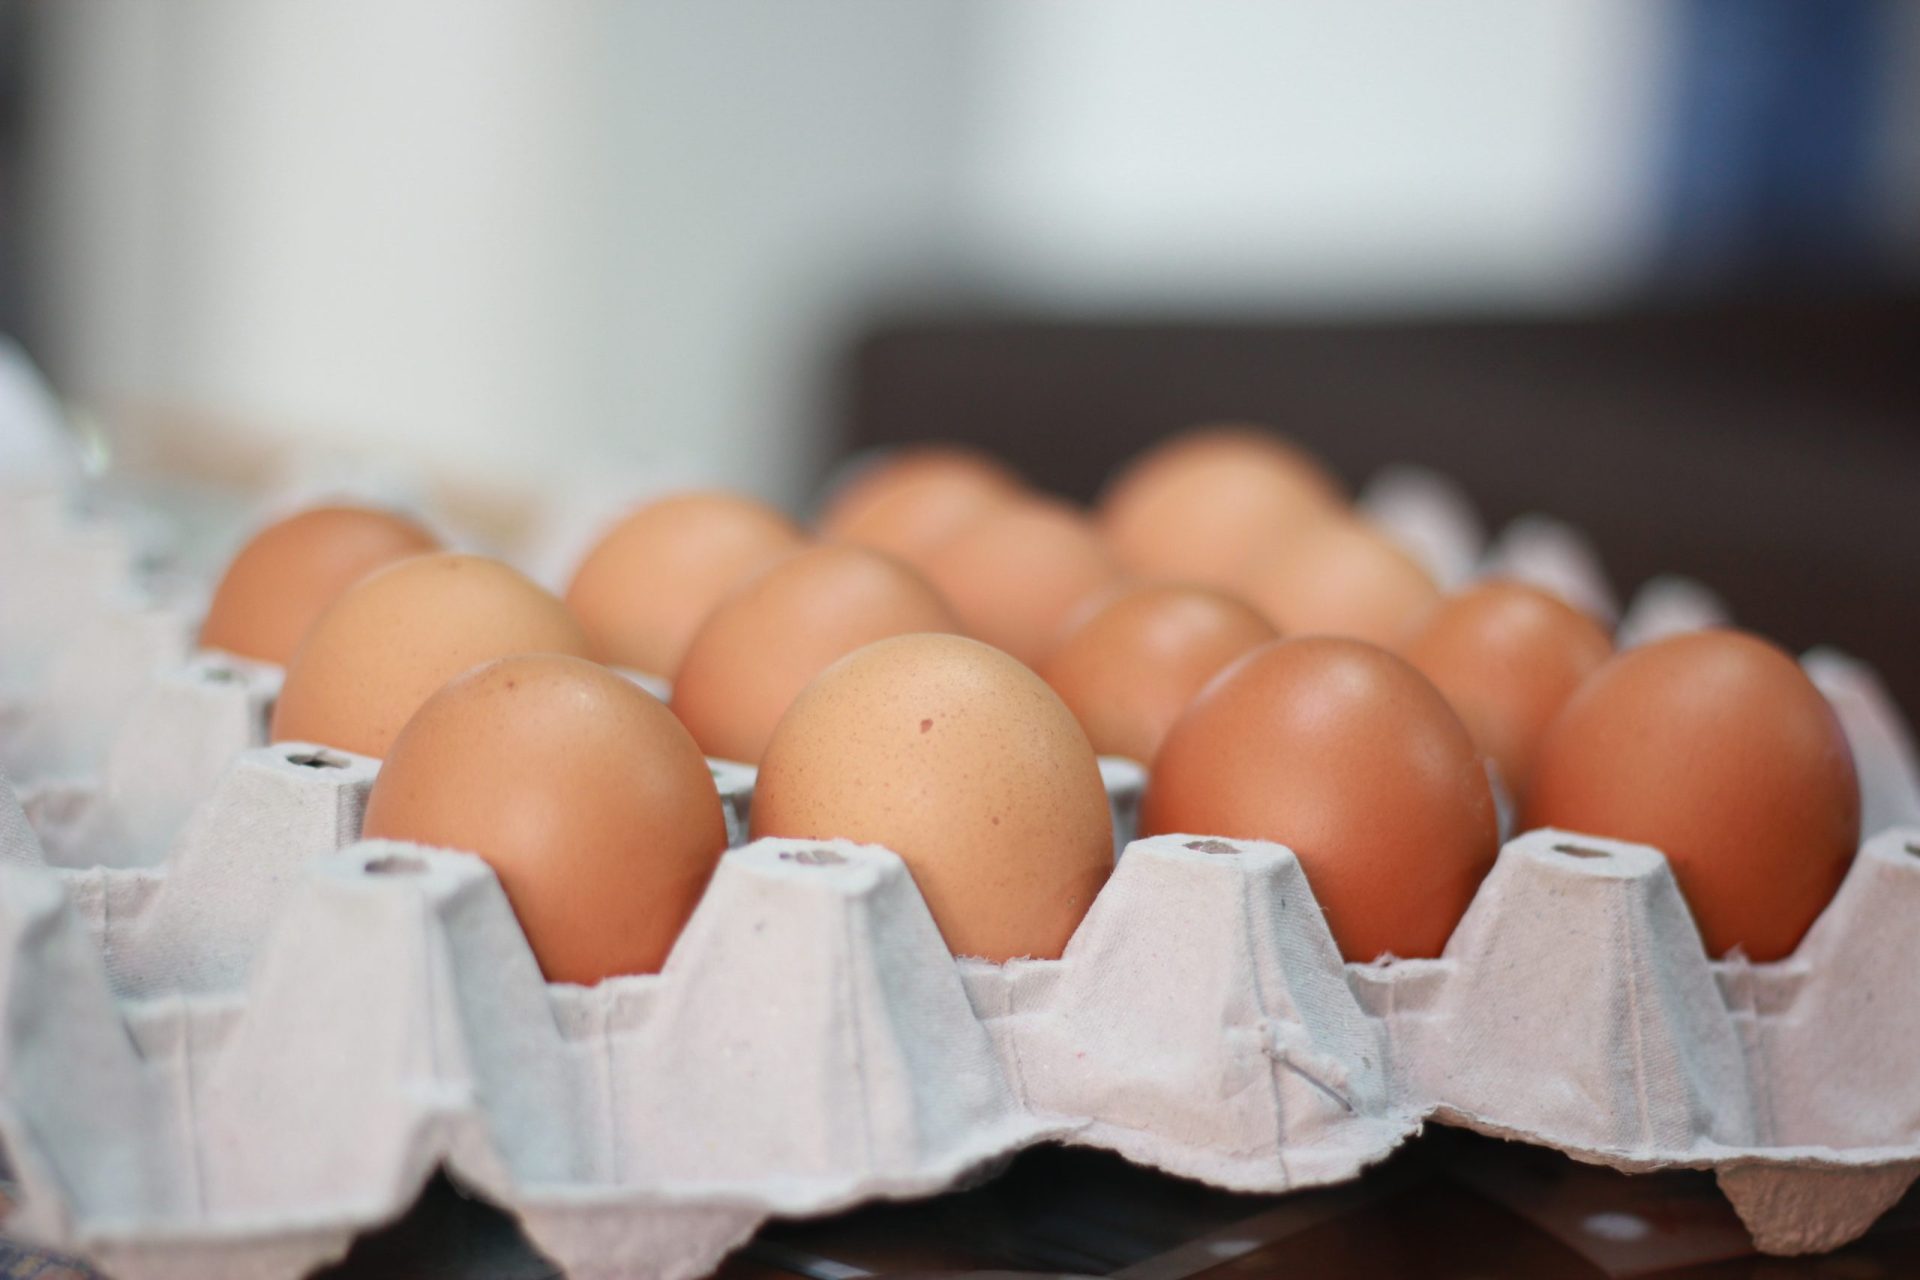 Os americanos guardam os ovos no frio e os europeus não. E há uma razão